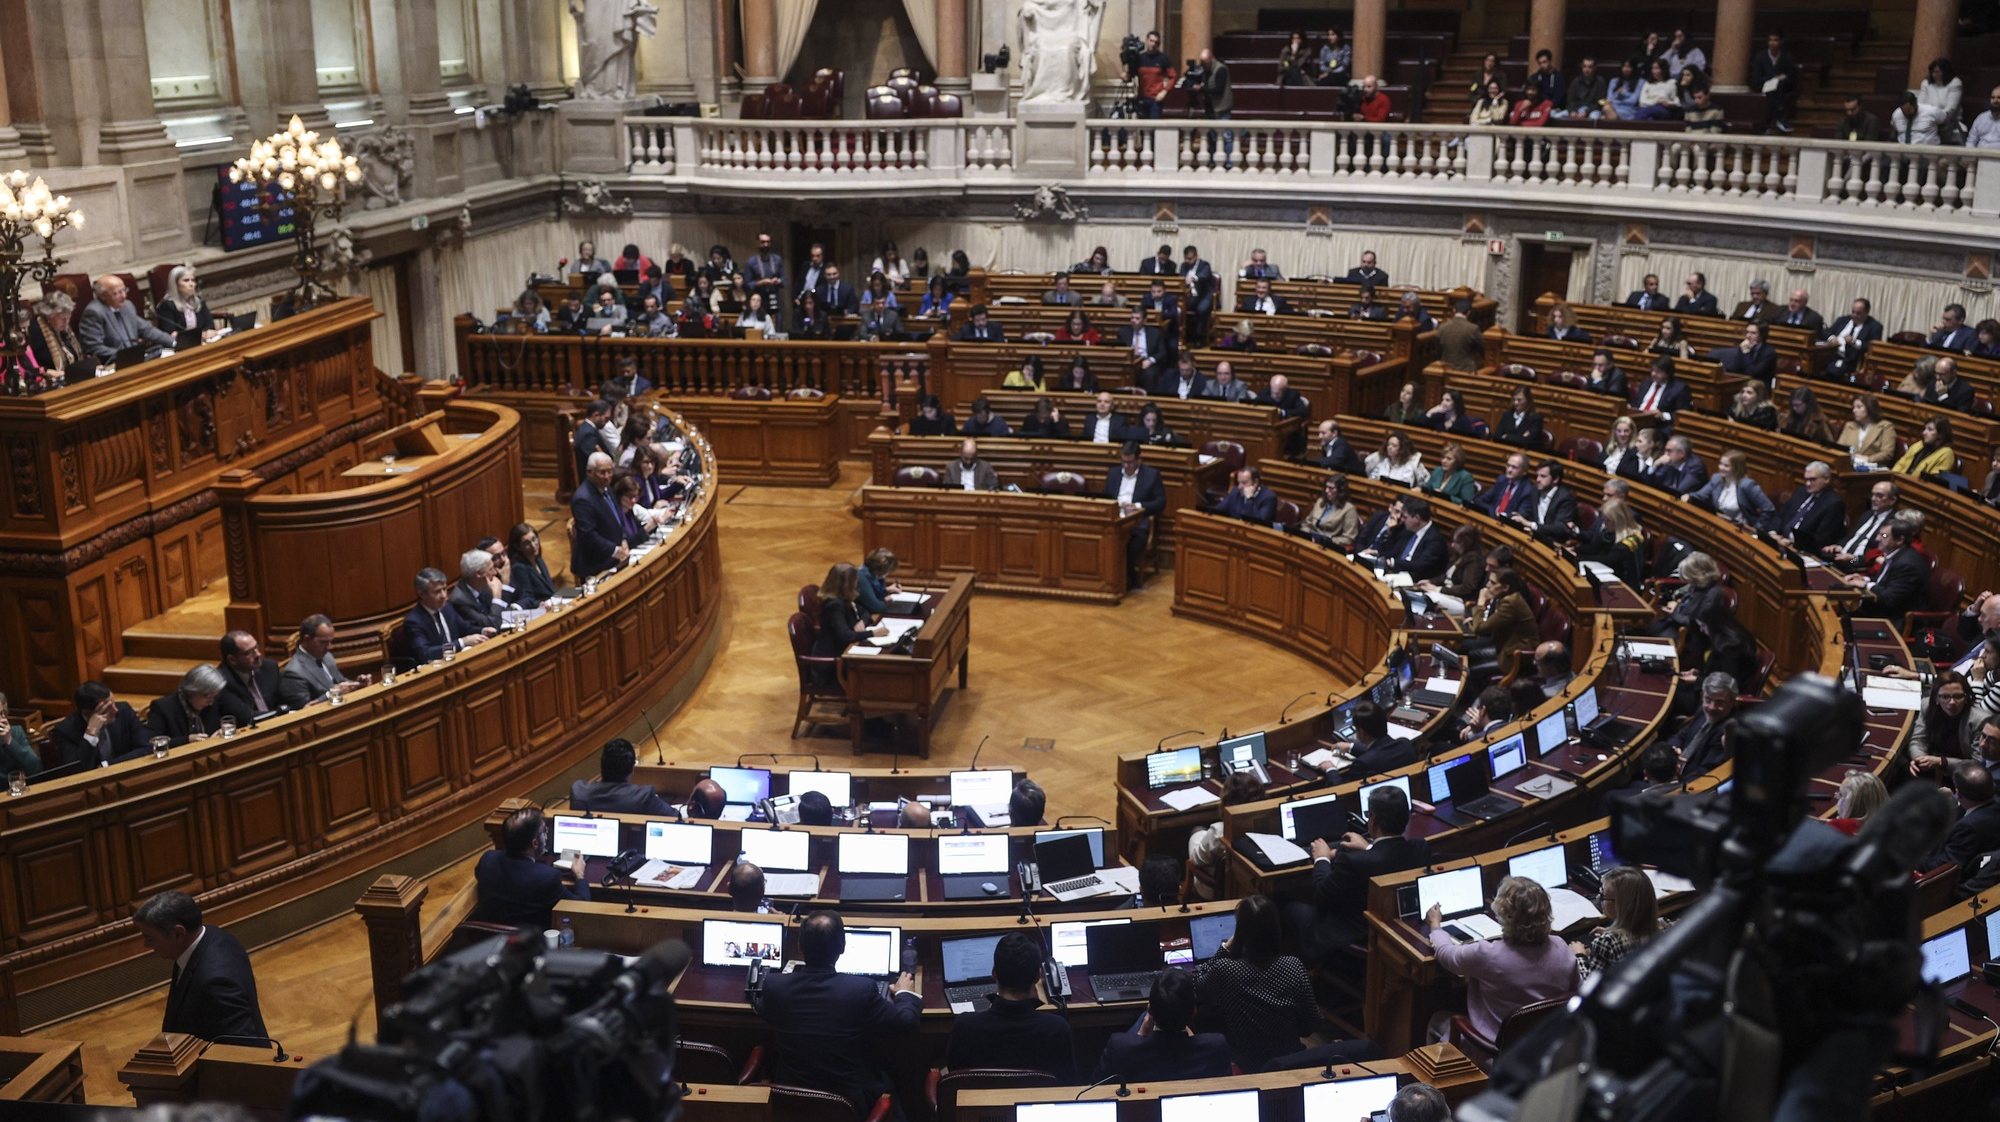 O primeiro Ministro António Costa intervém no debate parlamentar sobre política geral, esta tarde na Assembleia da República em Lisboa, 11 de janeiro de 2023. MIGUEL A. LOPES/LUSA